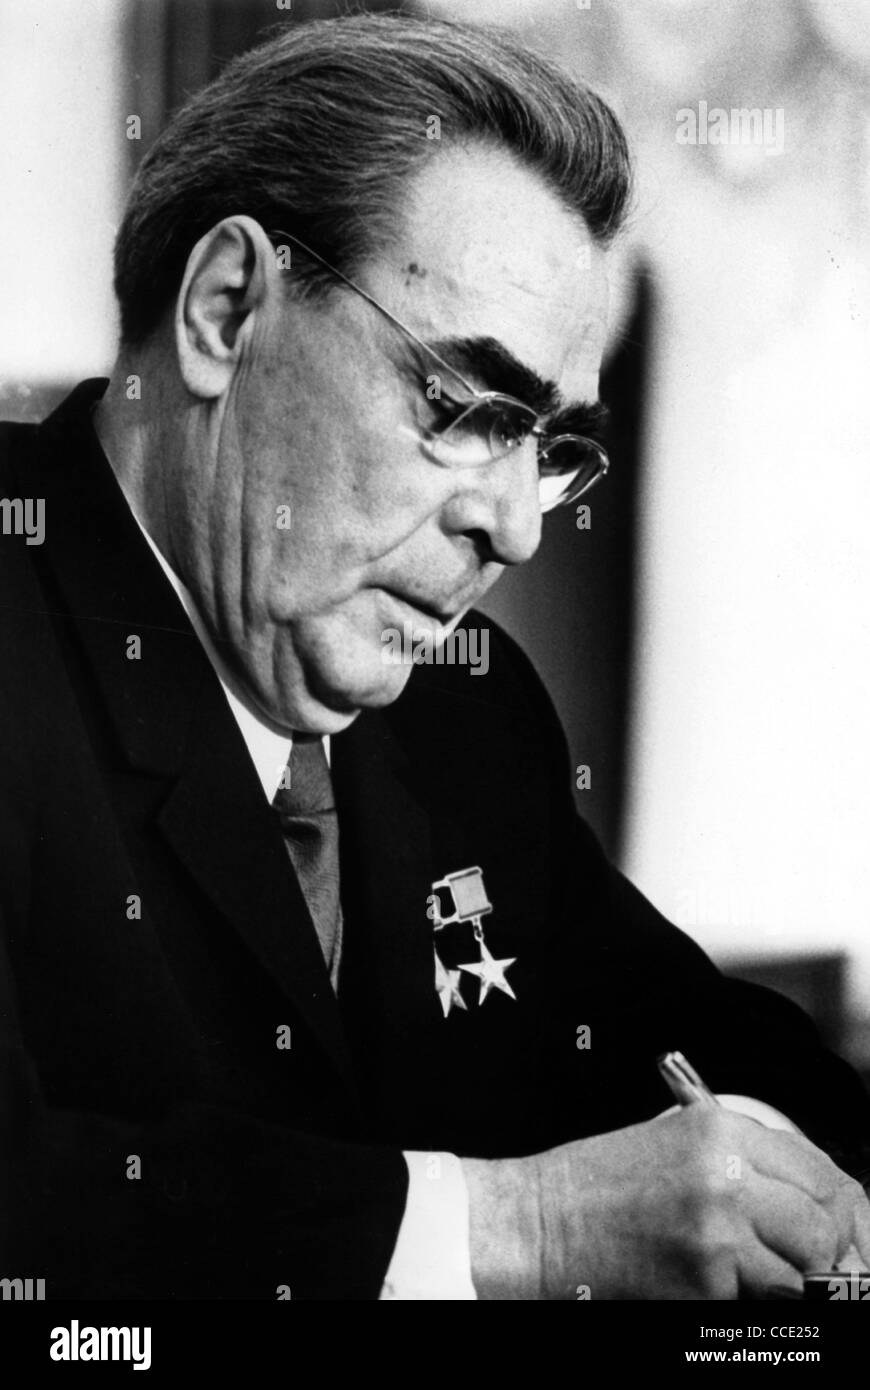 Porträt des sowjetischen Staat und Partei Führer Leonid Brezhnev von 1975. Stockfoto